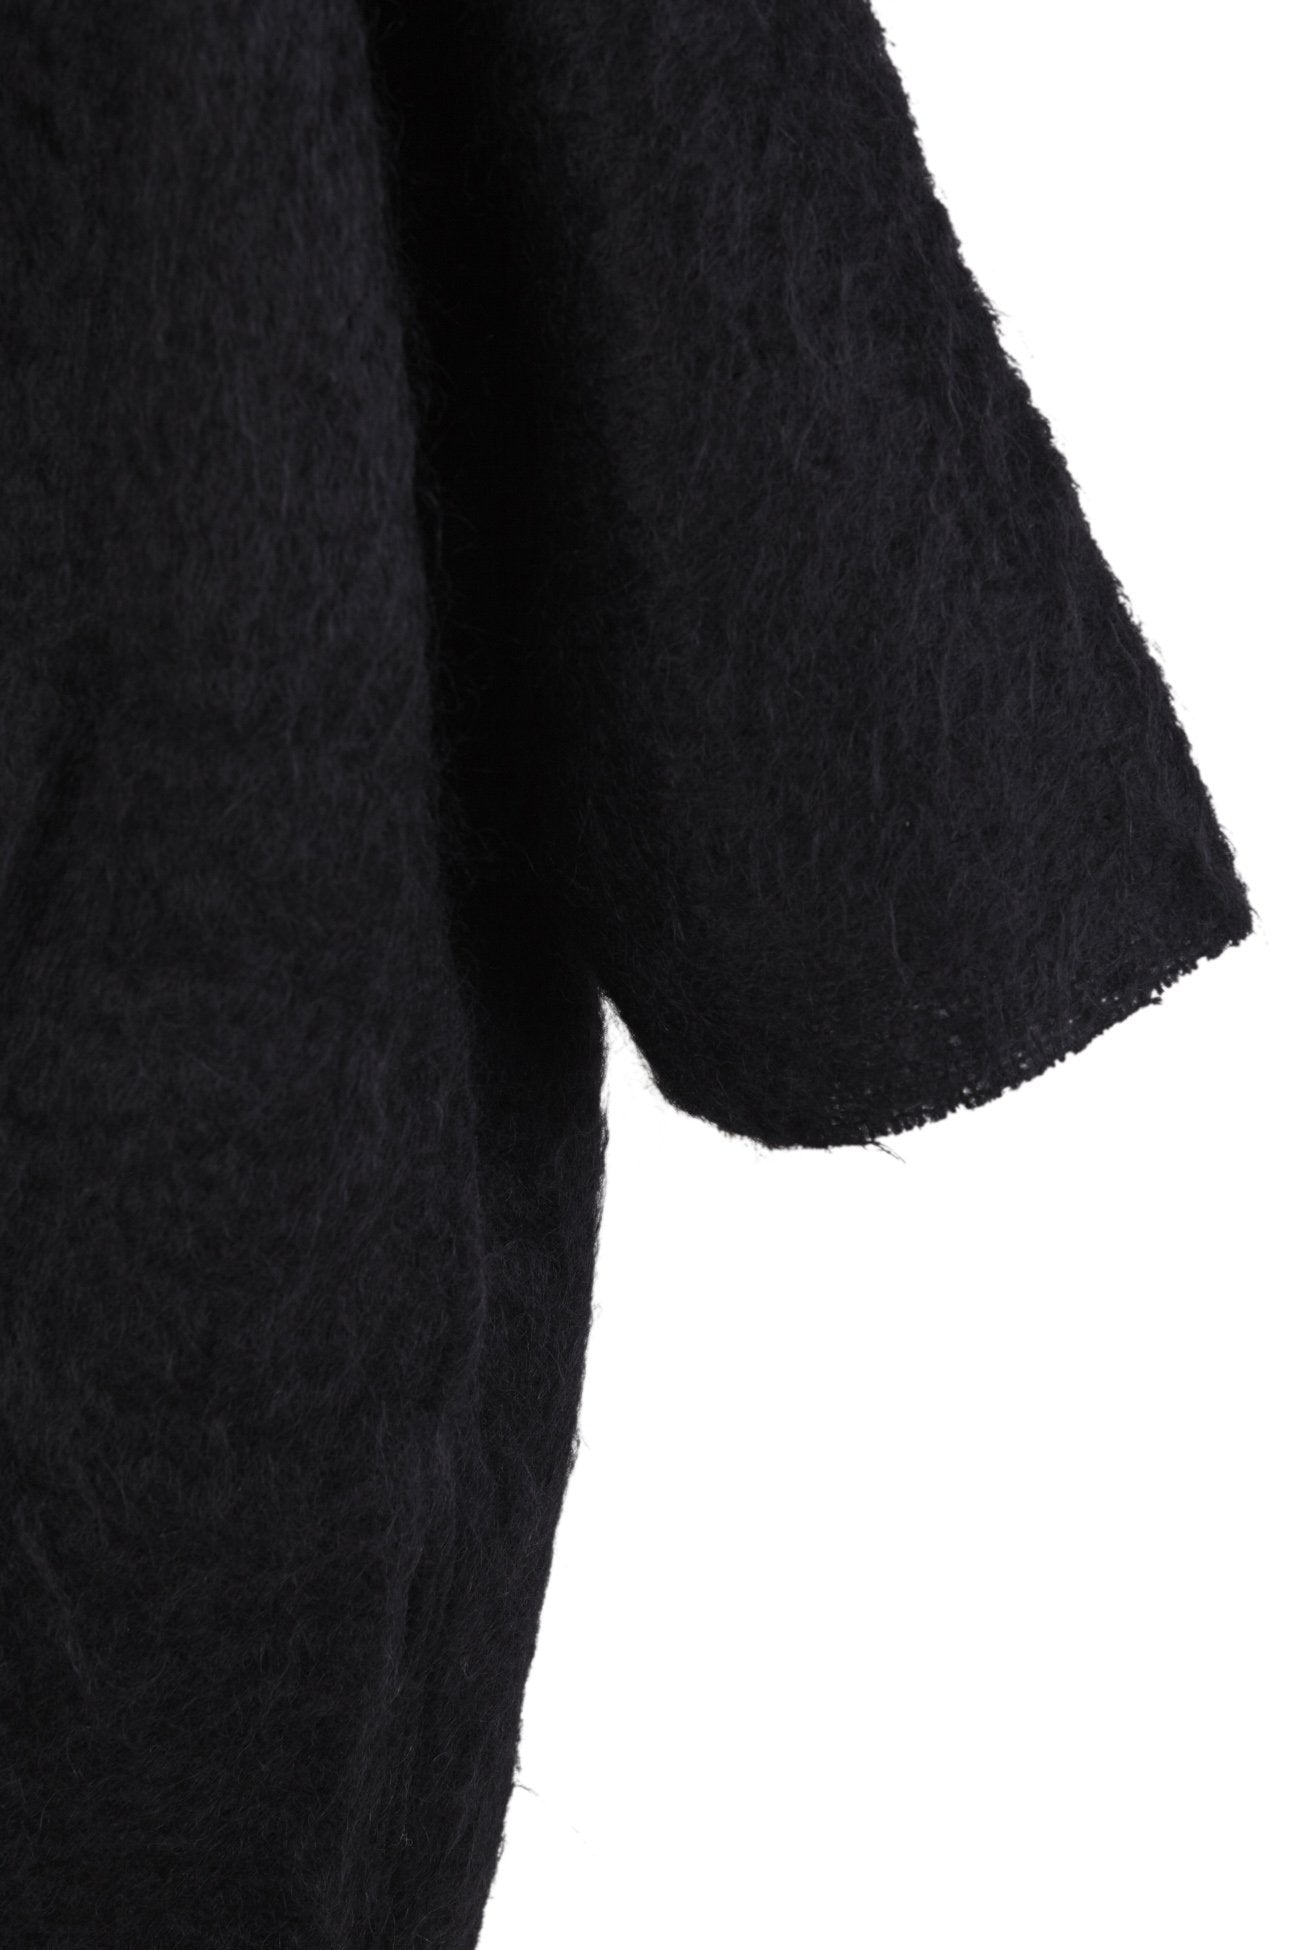 Kuma, abrigo oversize en mohair negro